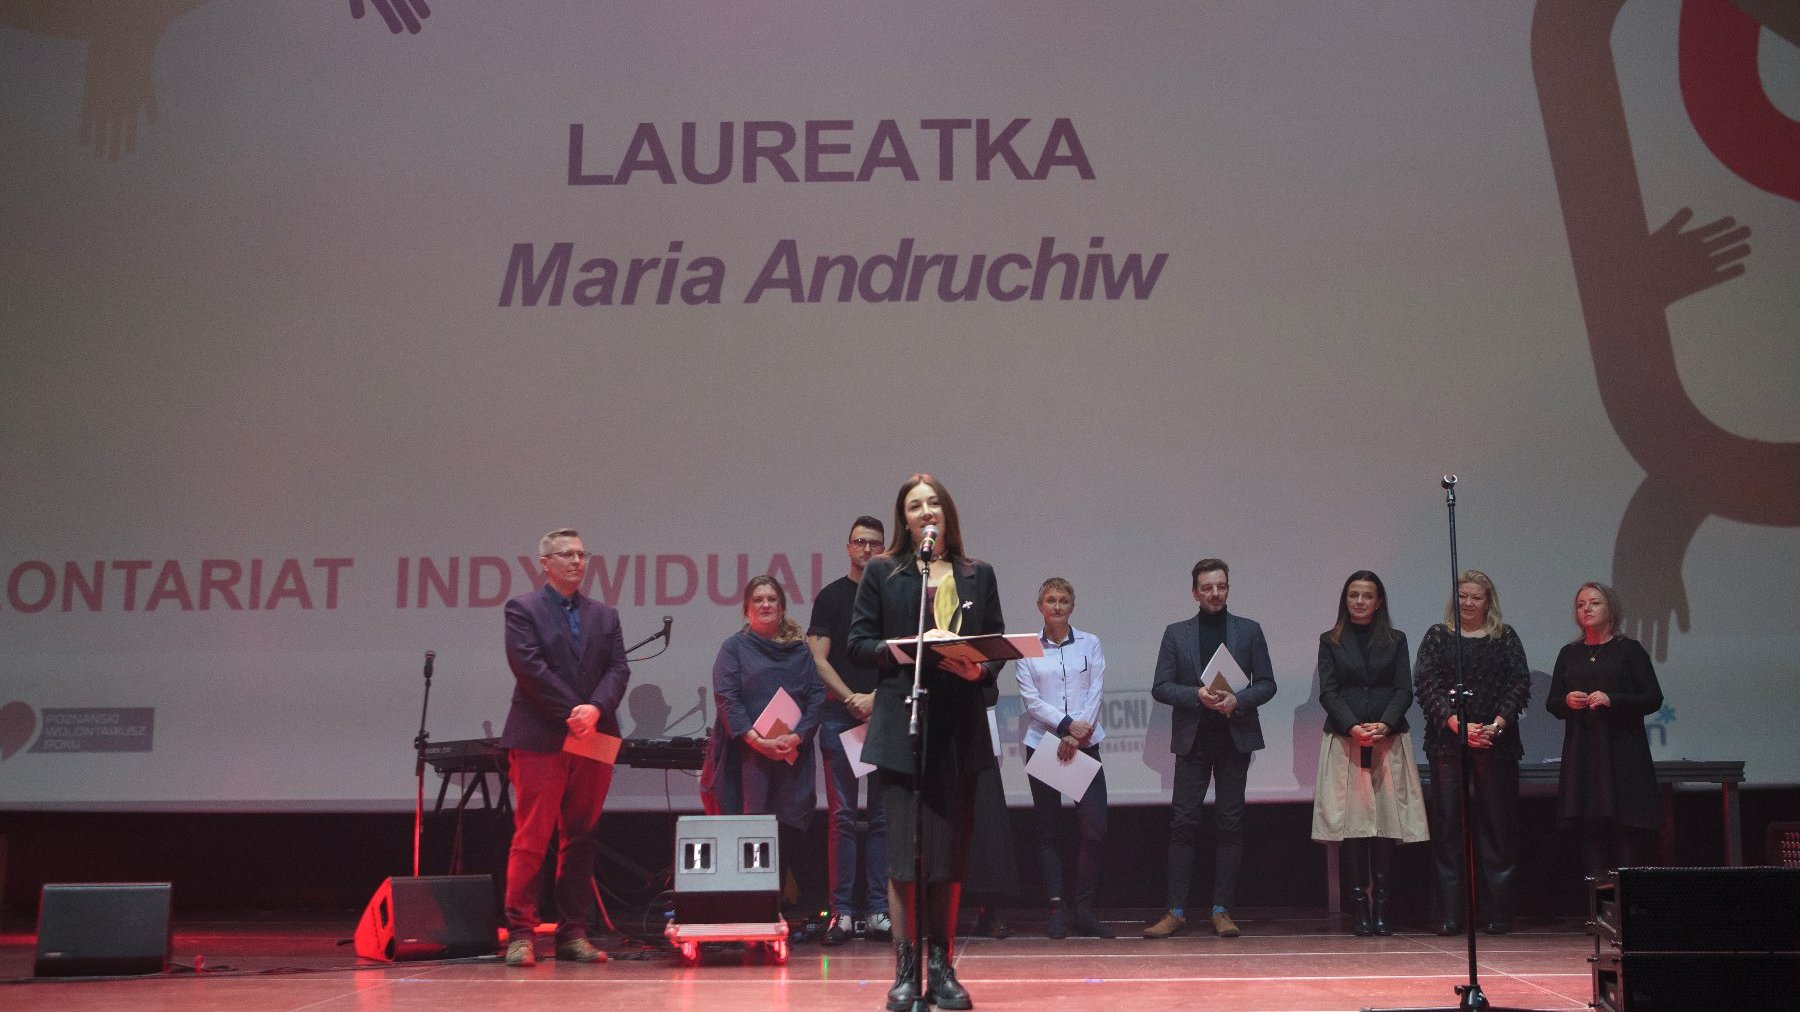 Nagrodę w kategorii Indywidualnej im. dr Wandy Błeńskiej otrzymała Maria Andruchiw